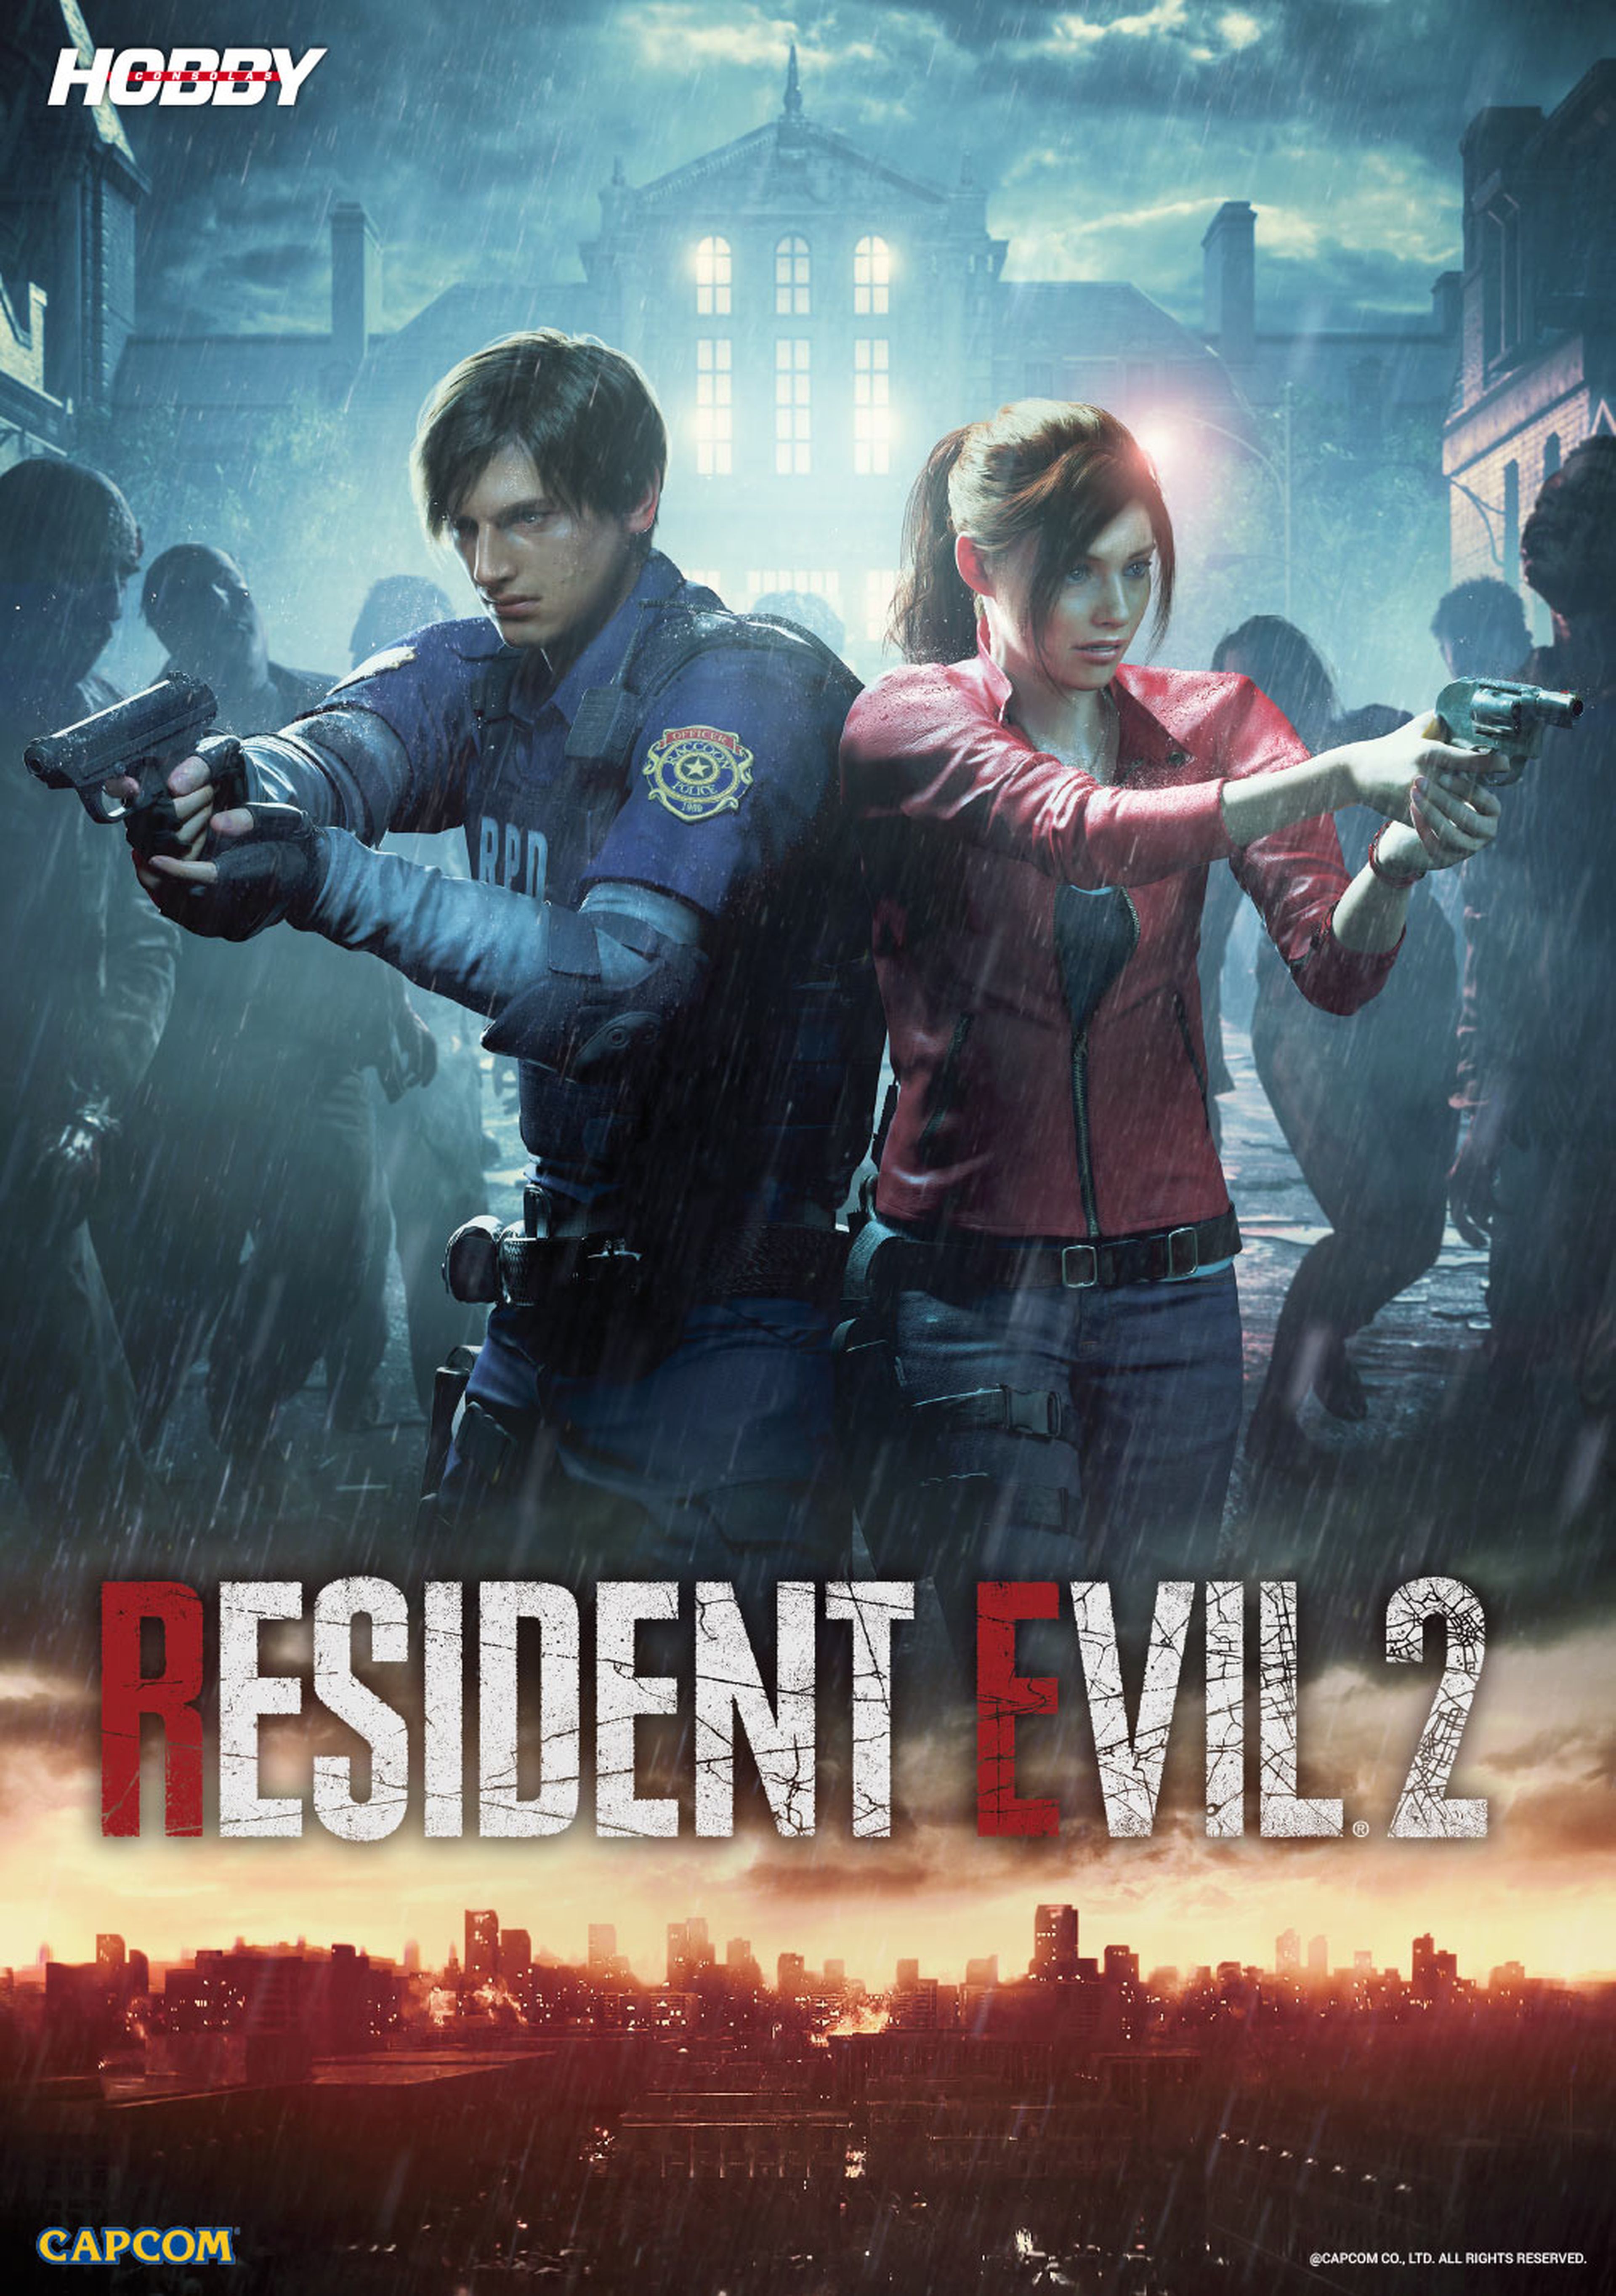 Hobby Consolas 329, ya a la venta con pósters de Resident Evil 2 y Battlefield V